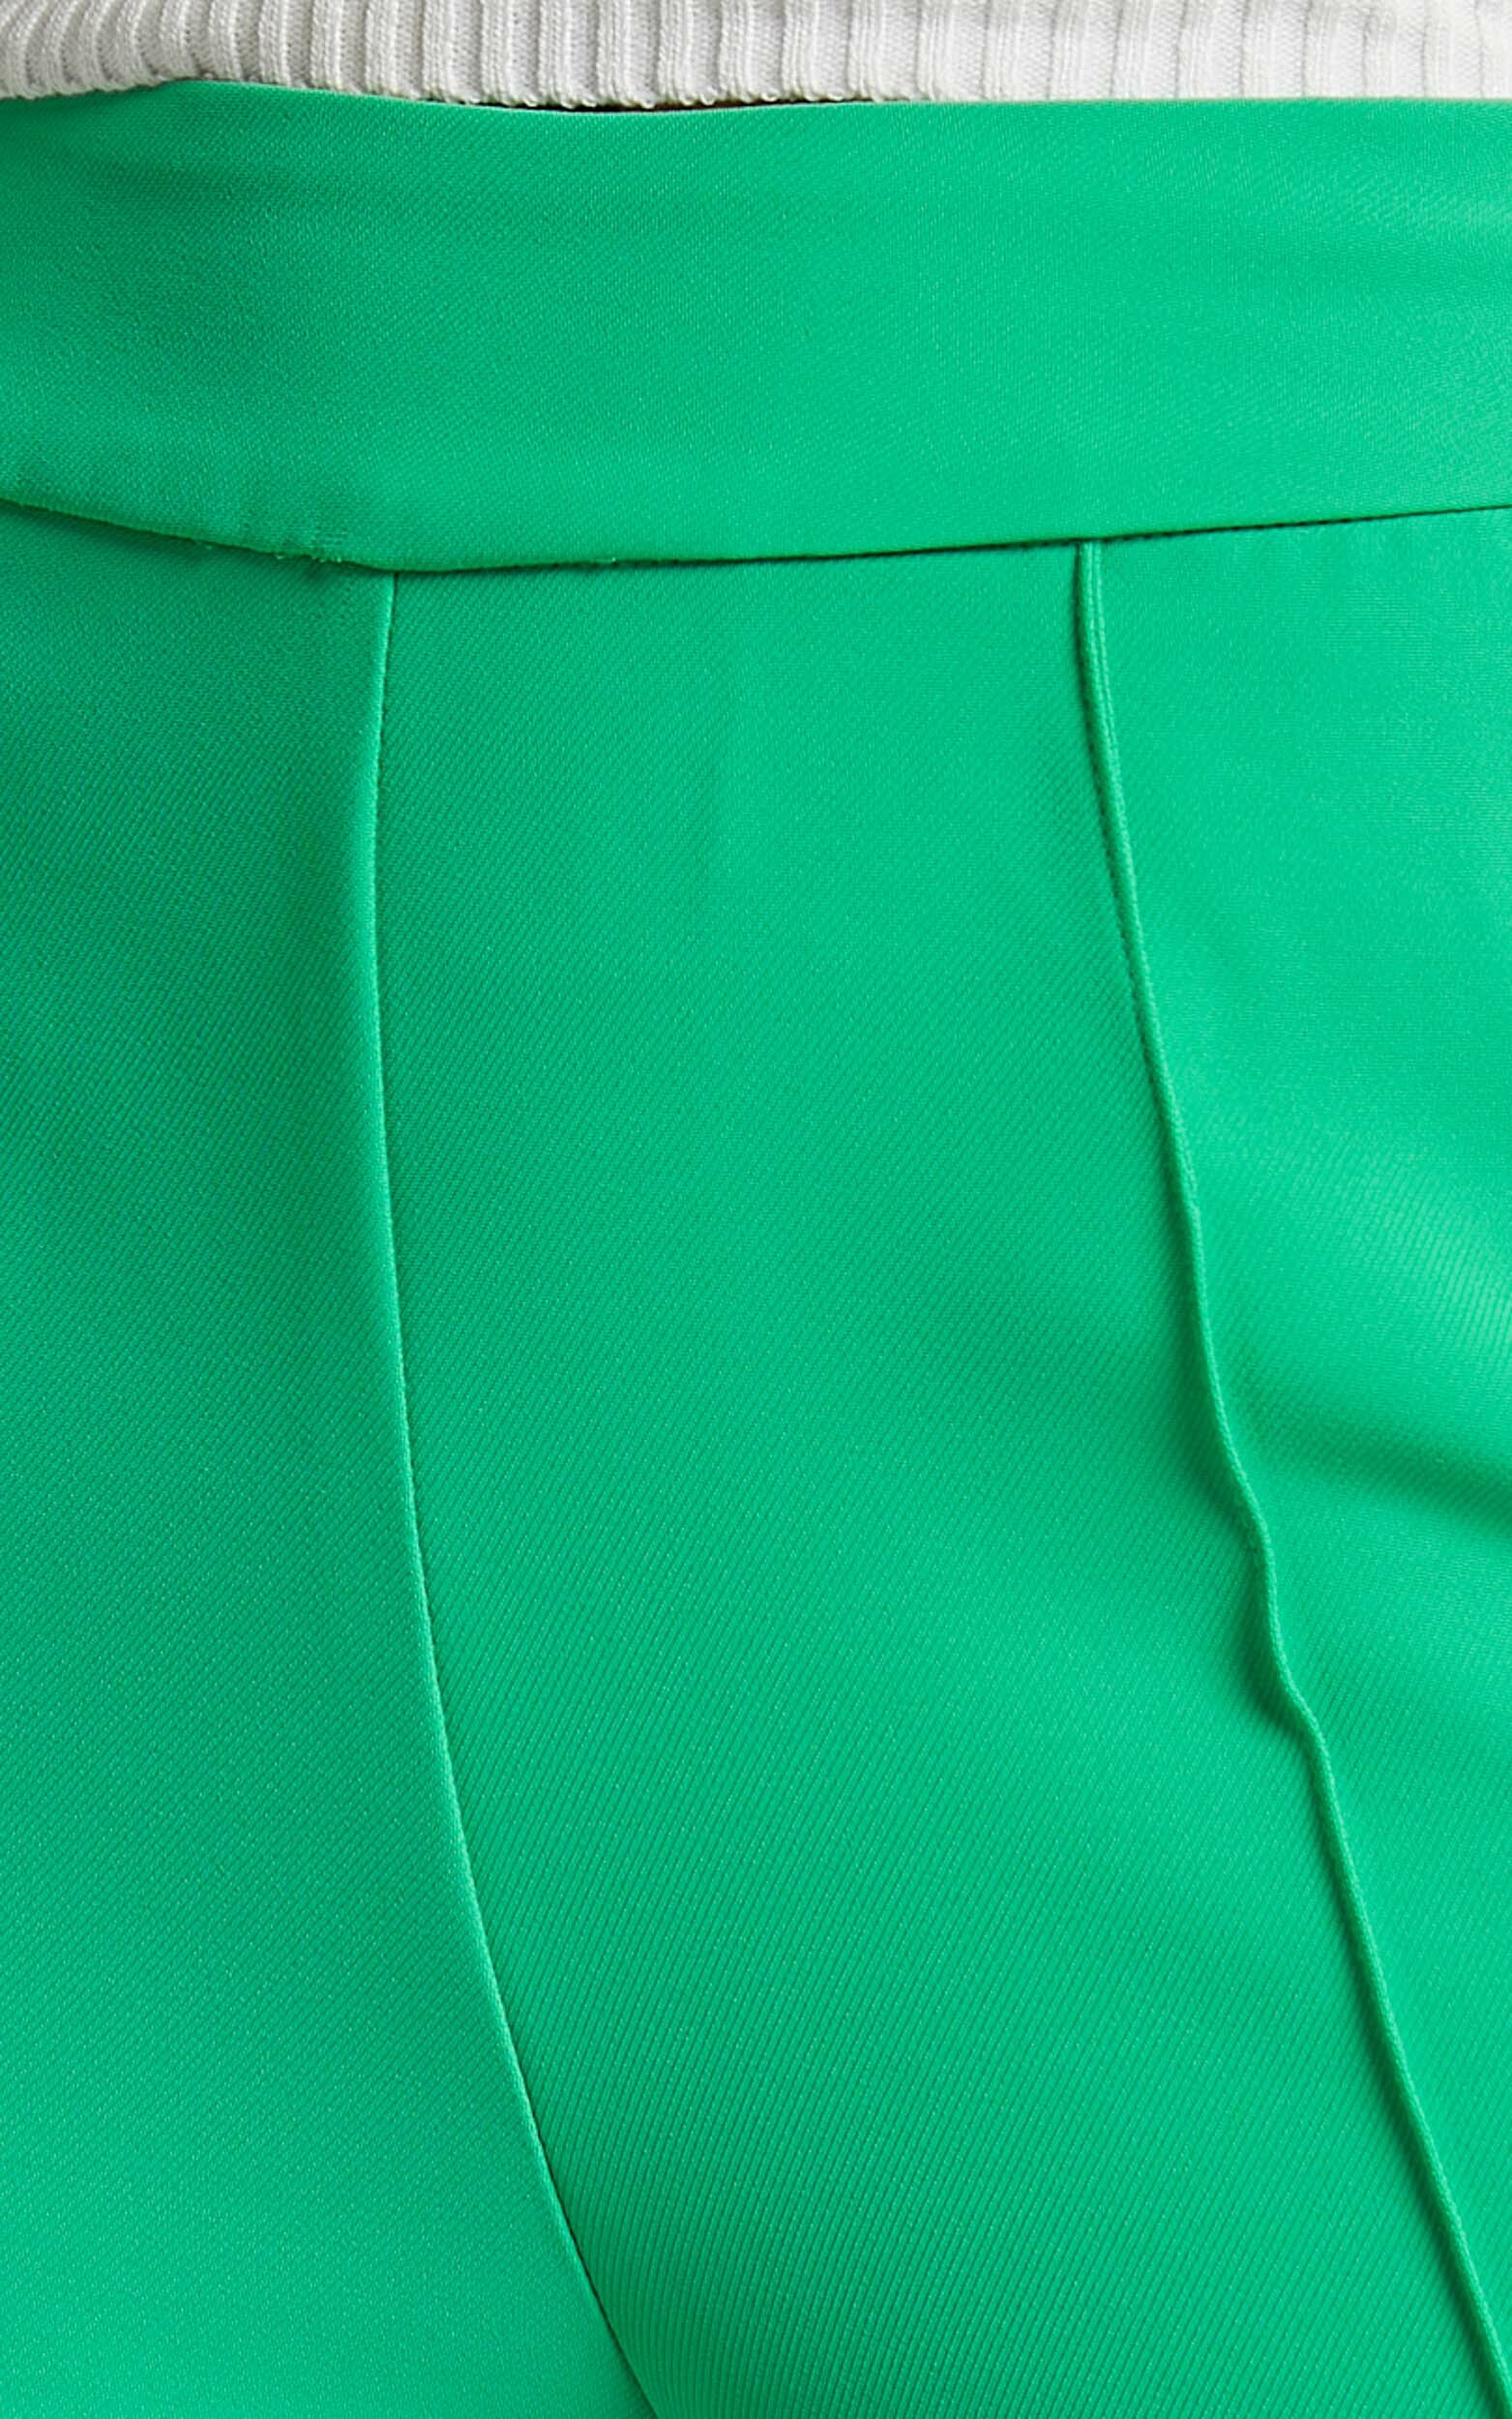 Jessa High Waisted Pants in Green | Showpo USA